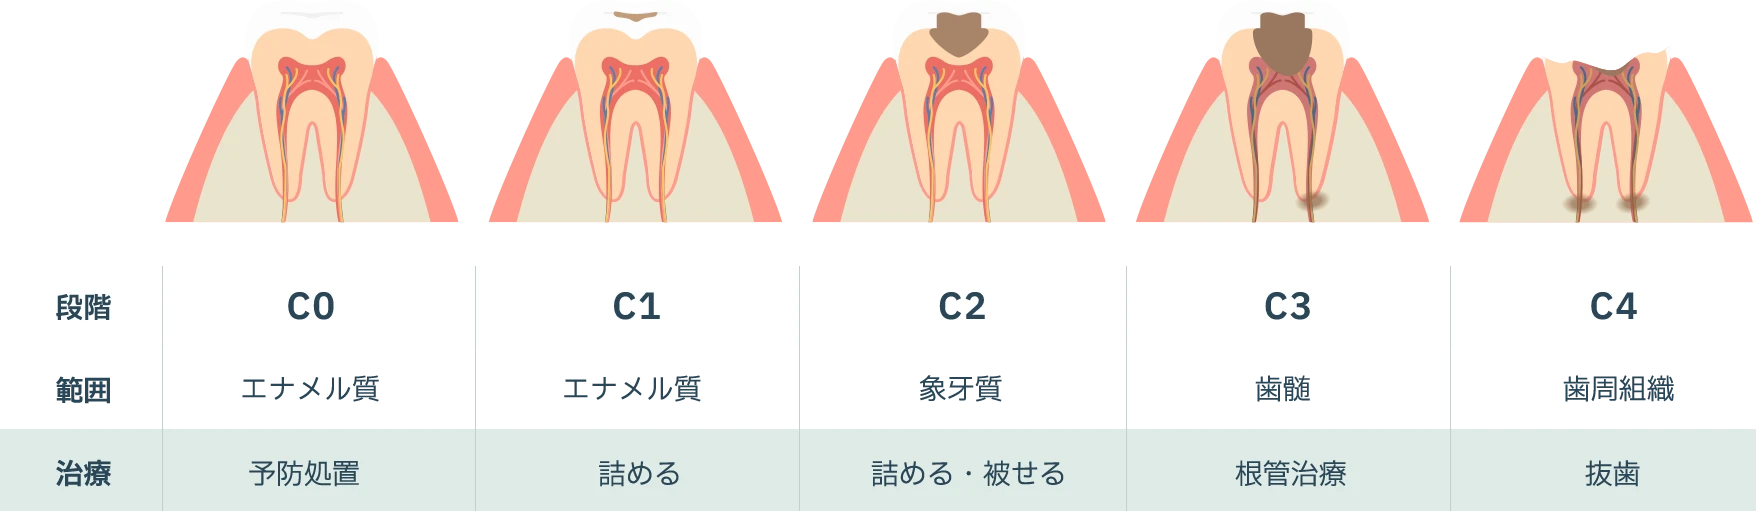 虫歯の進行ステージ